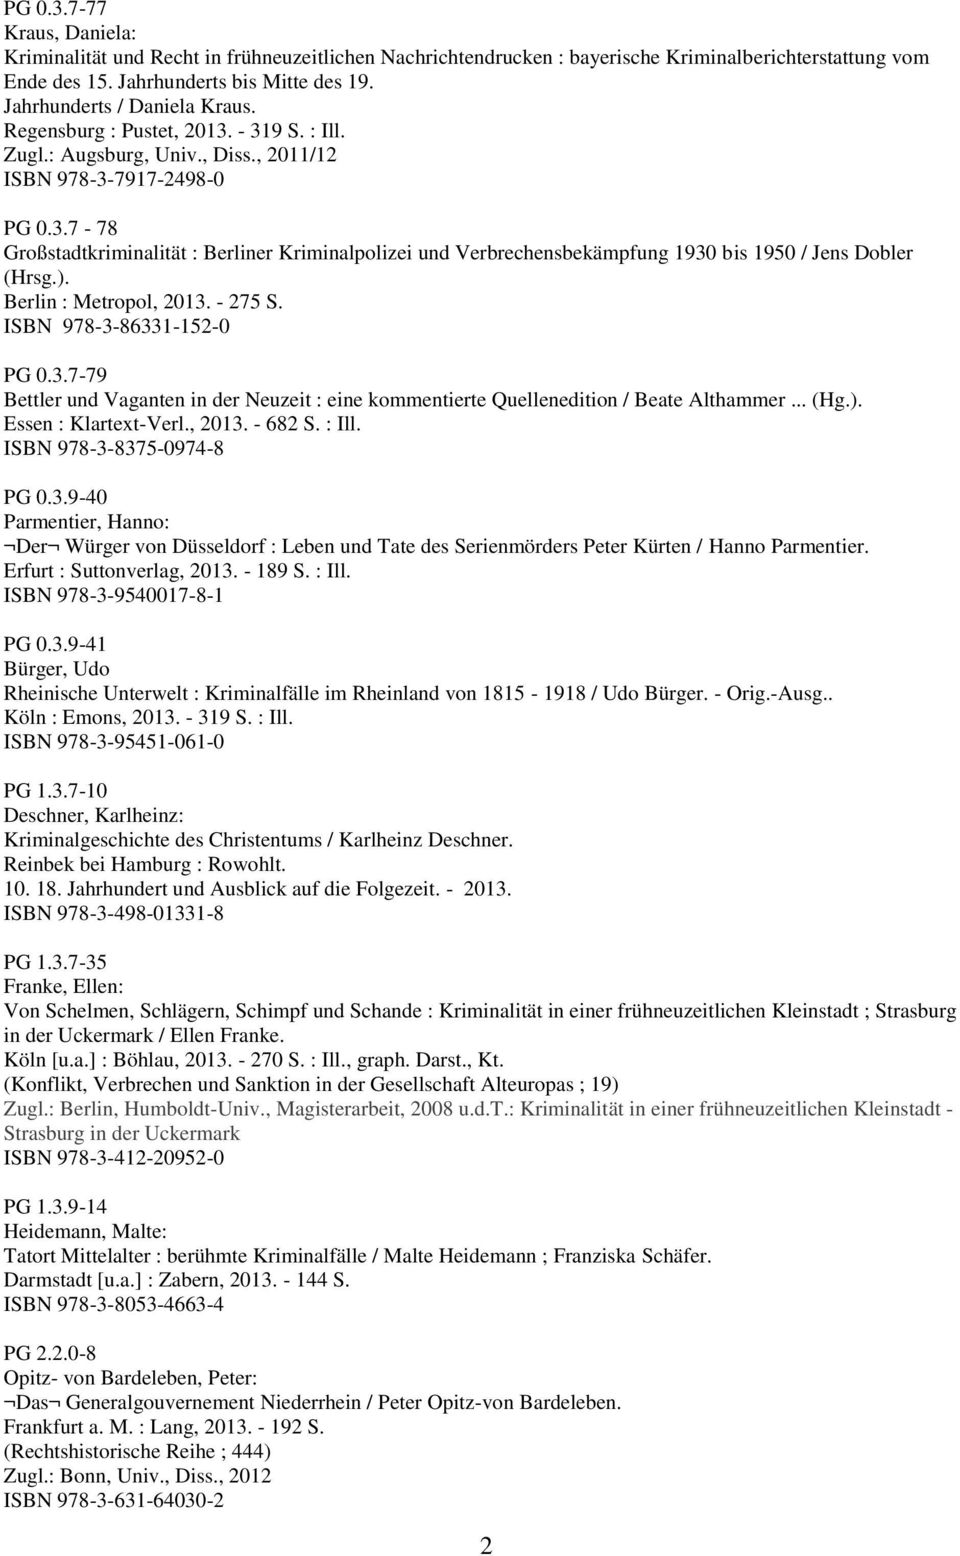 ). Berlin : Metropol, 2013. - 275 S. ISBN 978-3-86331-152-0 PG 0.3.7-79 Bettler und Vaganten in der Neuzeit : eine kommentierte Quellenedition / Beate Althammer... (Hg.). Essen : Klartext-Verl., 2013. - 682 S.